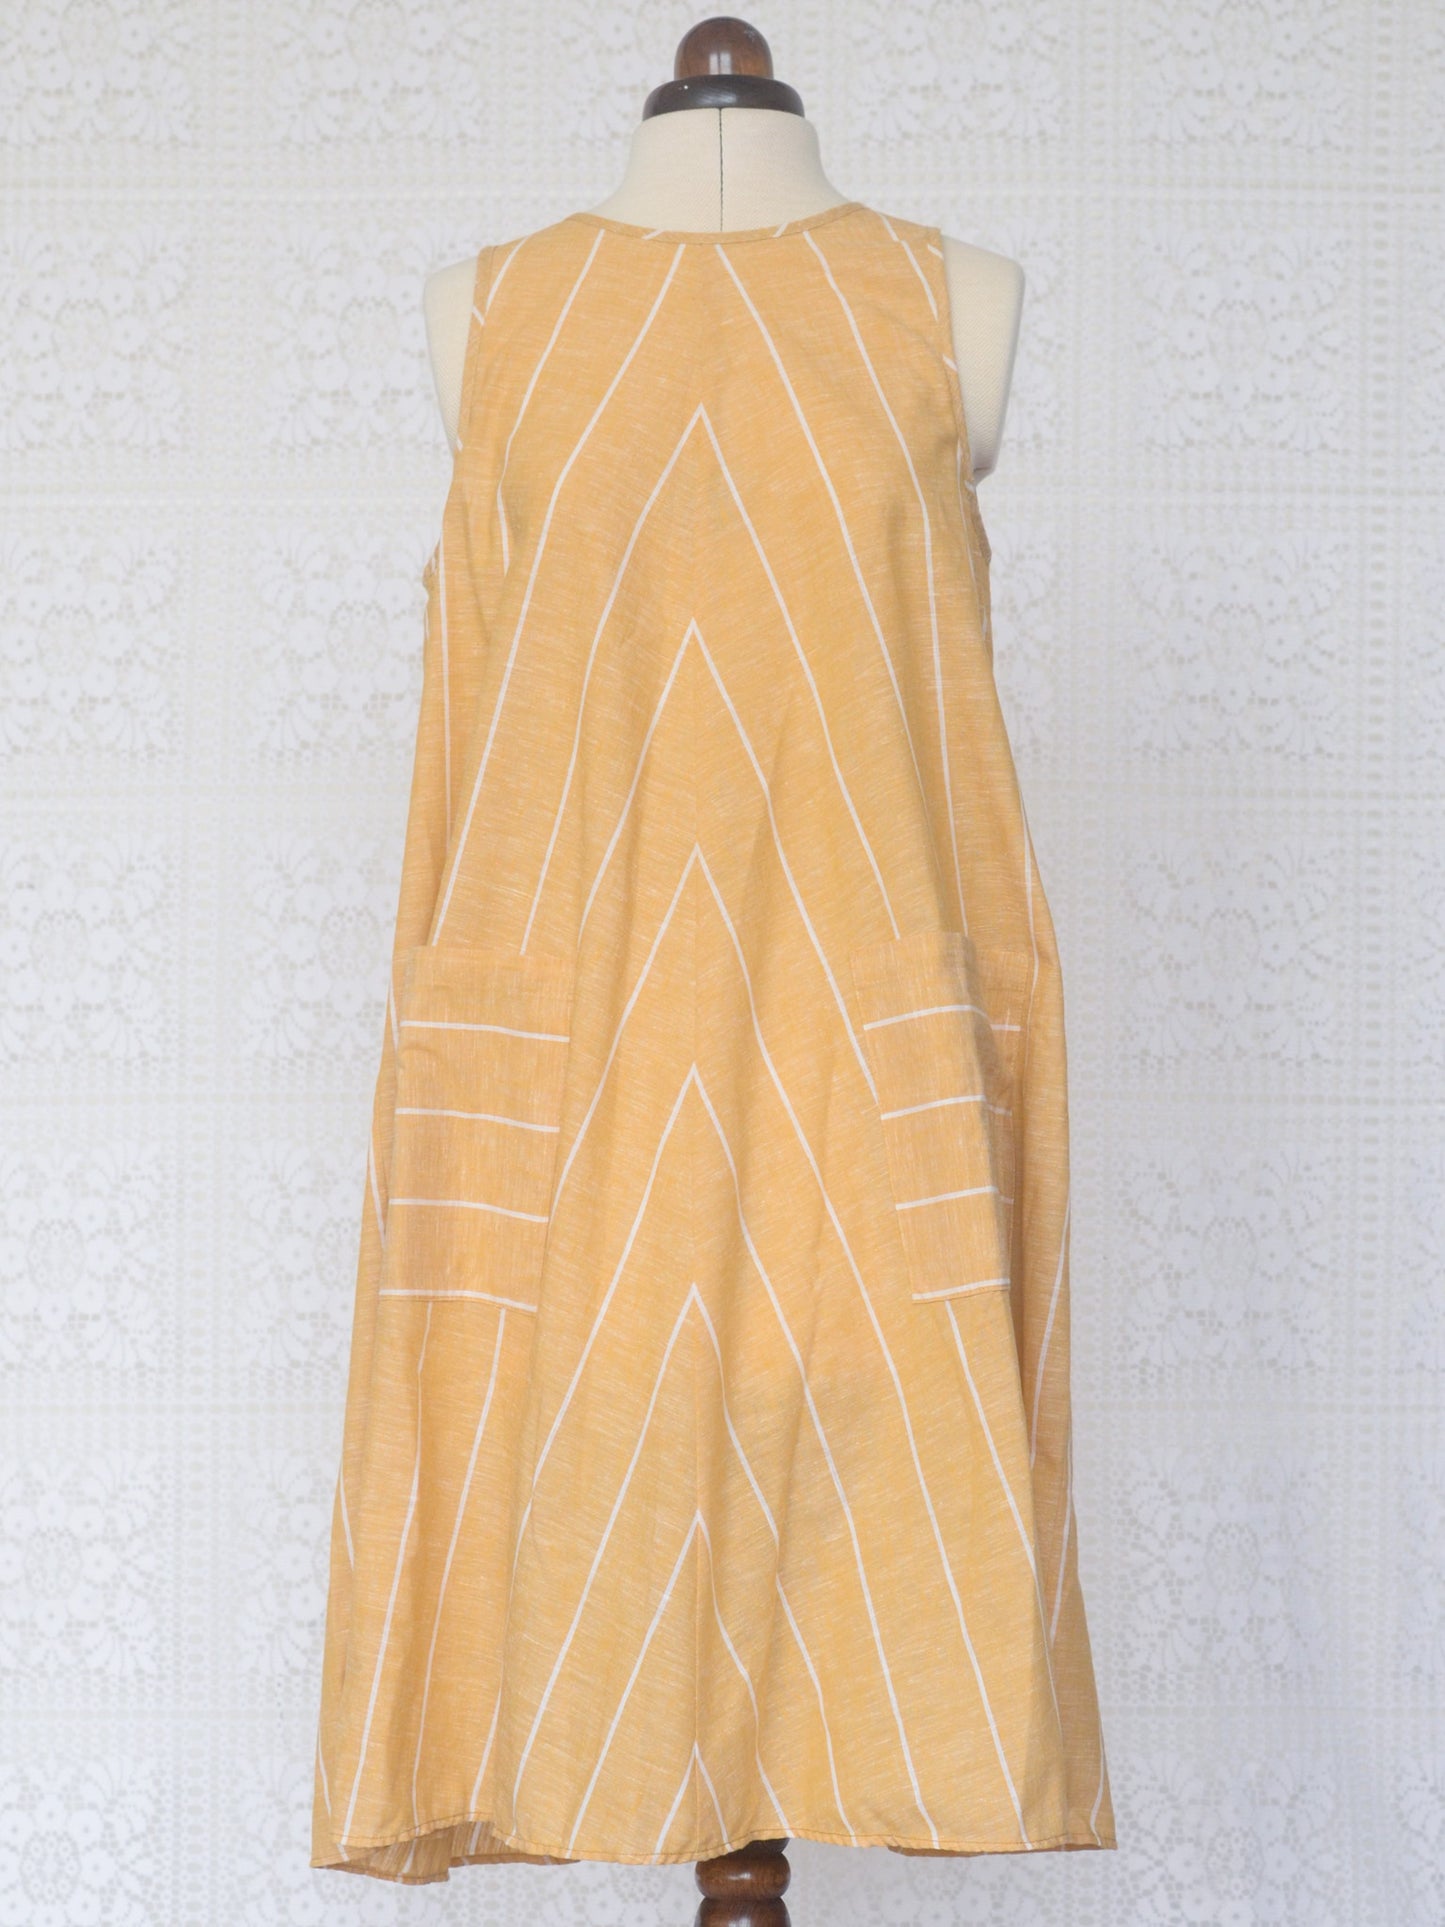 1980s St Michael yellow and white chevron sleeveless sun dress